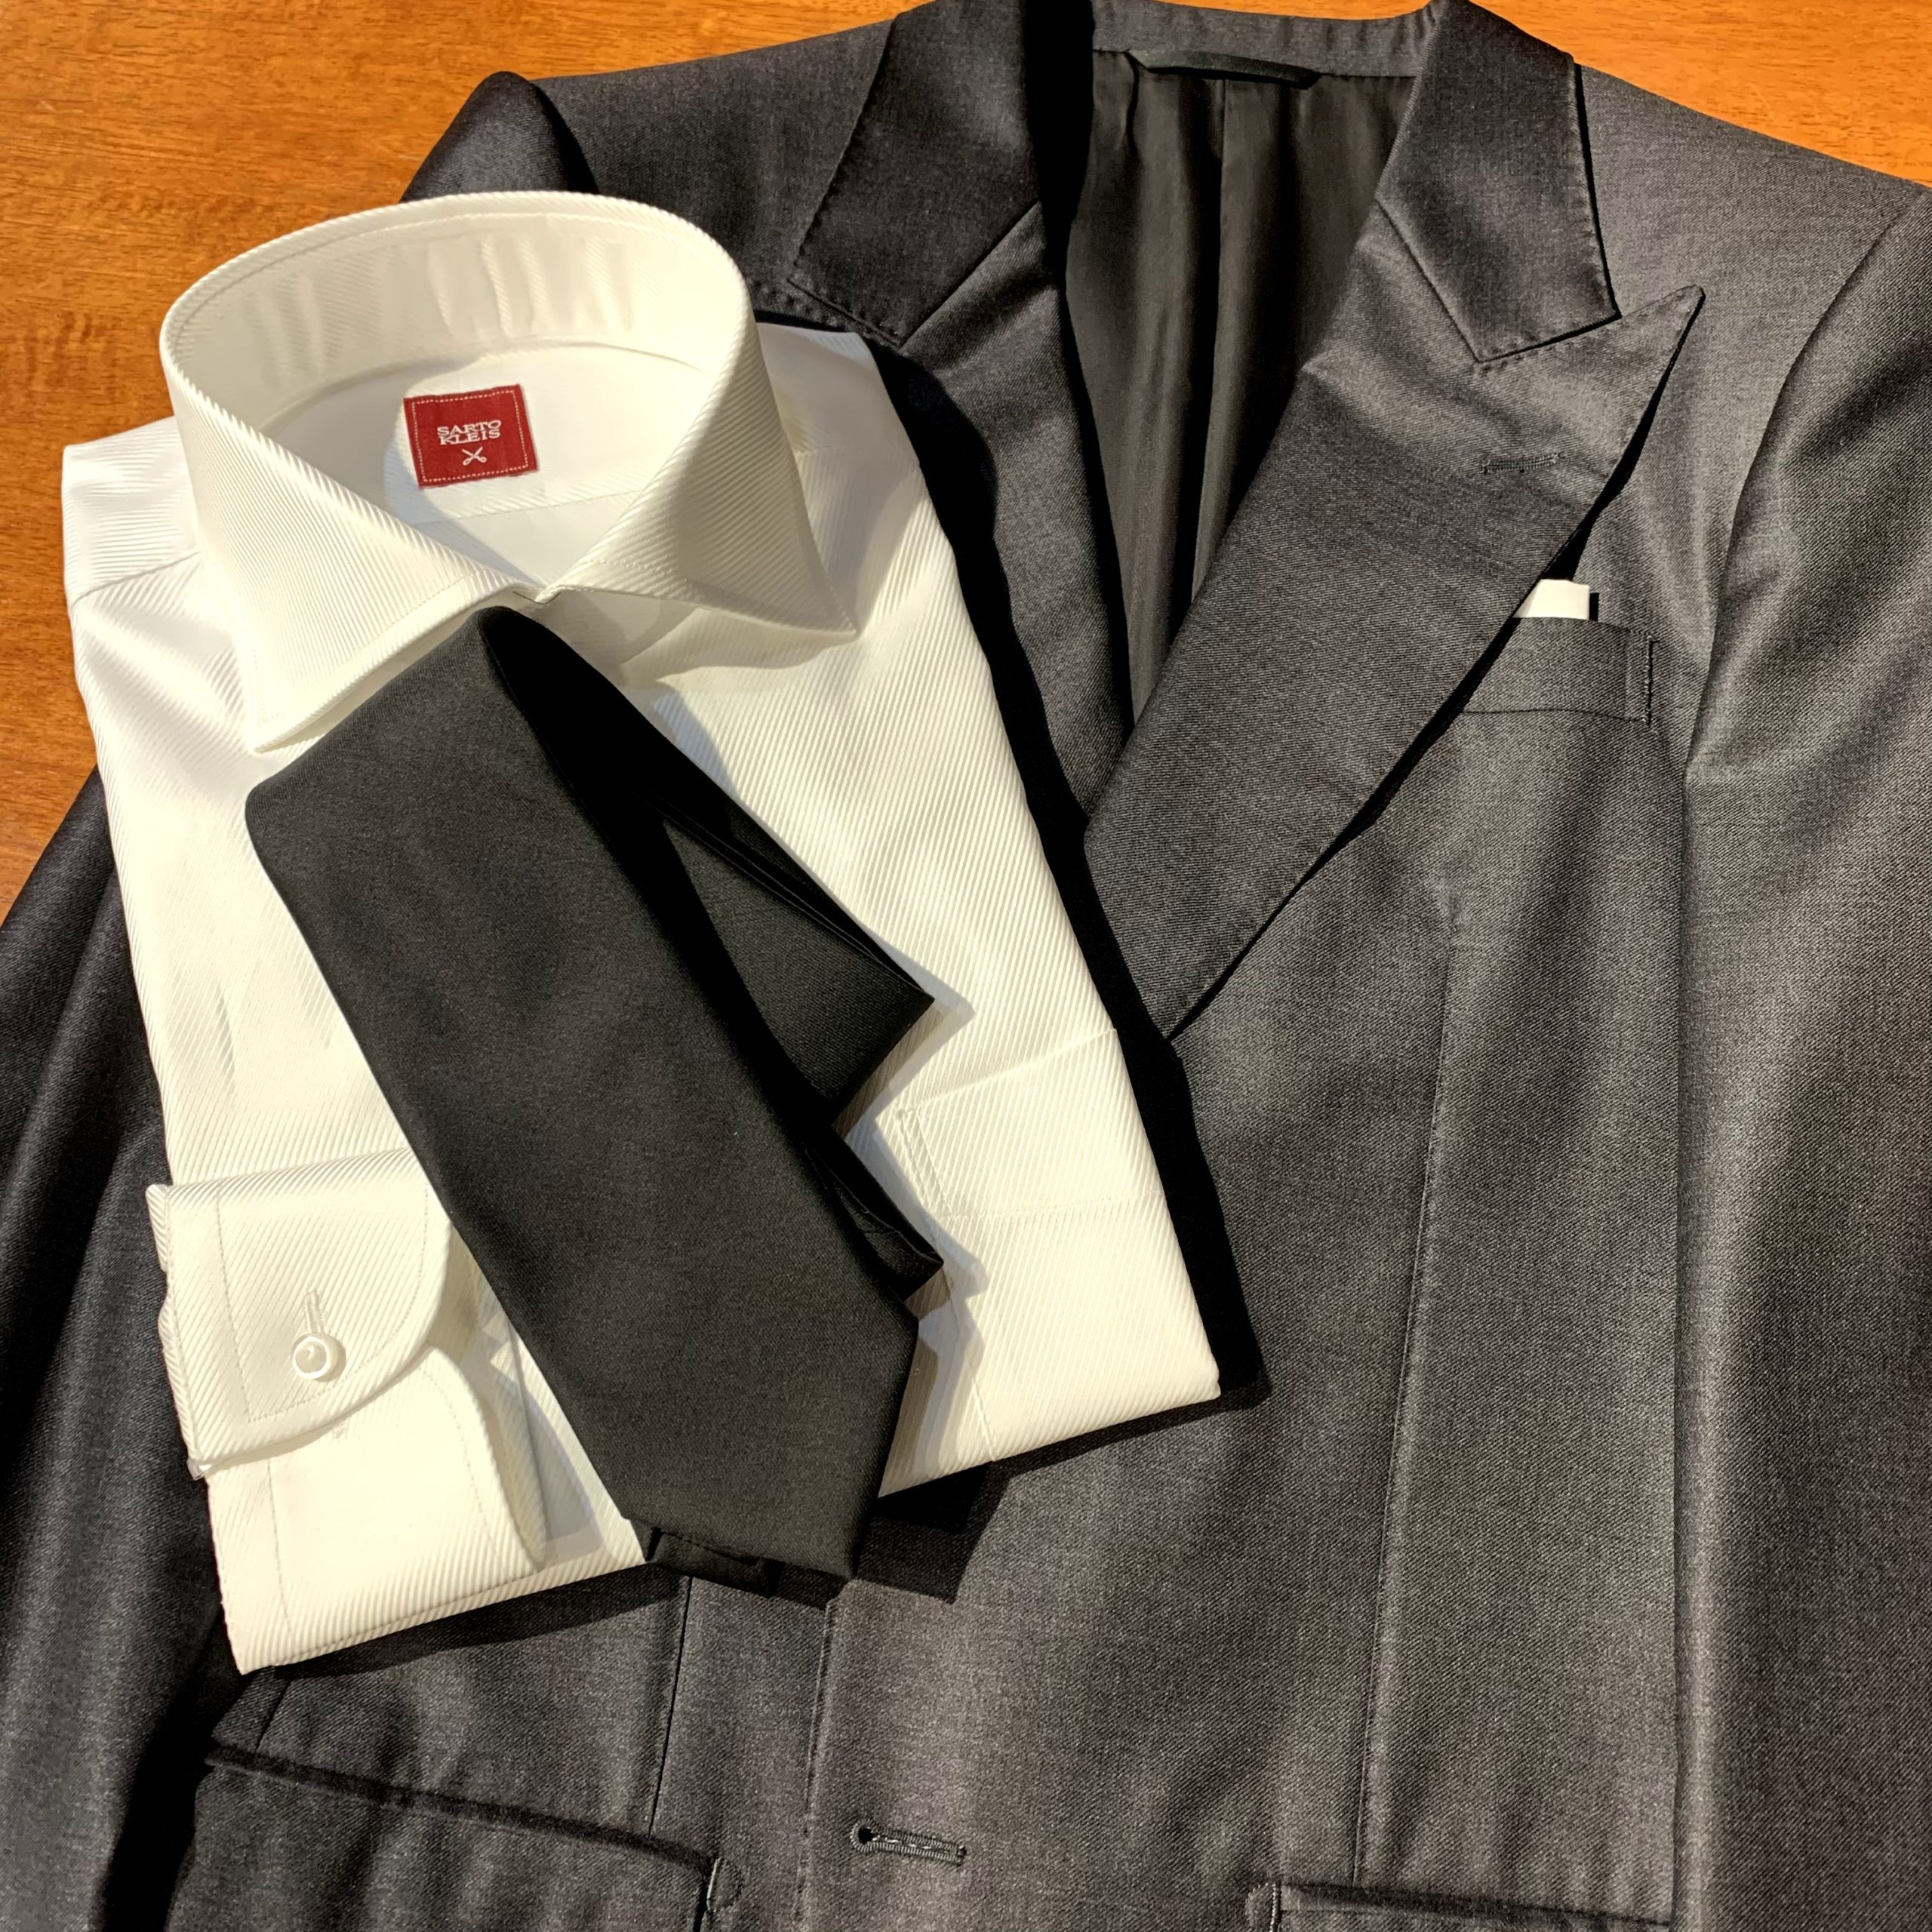 王道 着こなし グレースーツ 白シャツには 黒ネクタイ が正解 Sartokleis 大阪 京都のオーダースーツ専門店